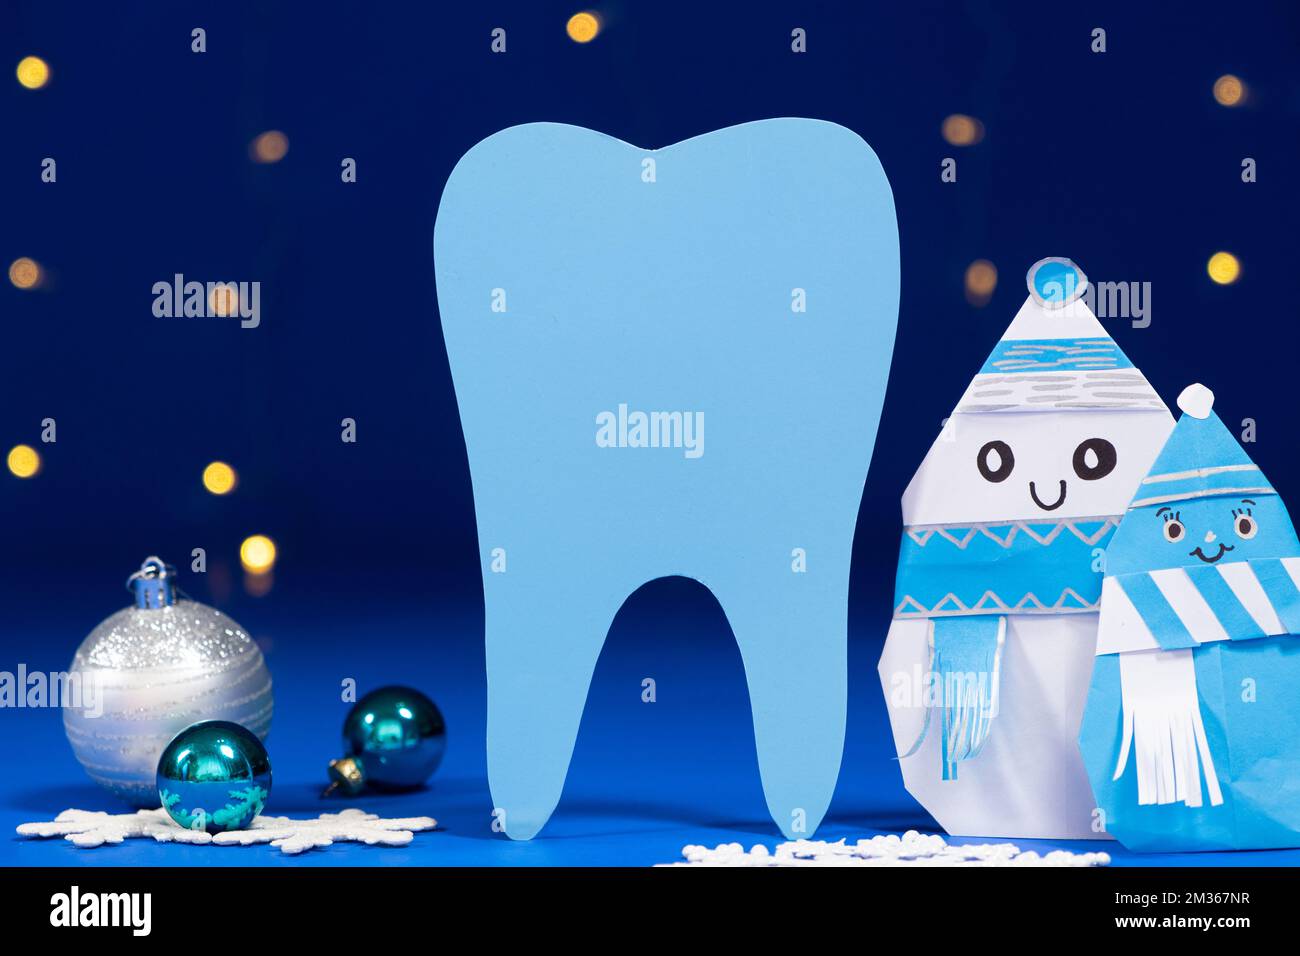 Dentisterie de Noël - grosse dent, bonhomme de neige et boules sur fond bleu, guirlande de bokeh. Banque D'Images